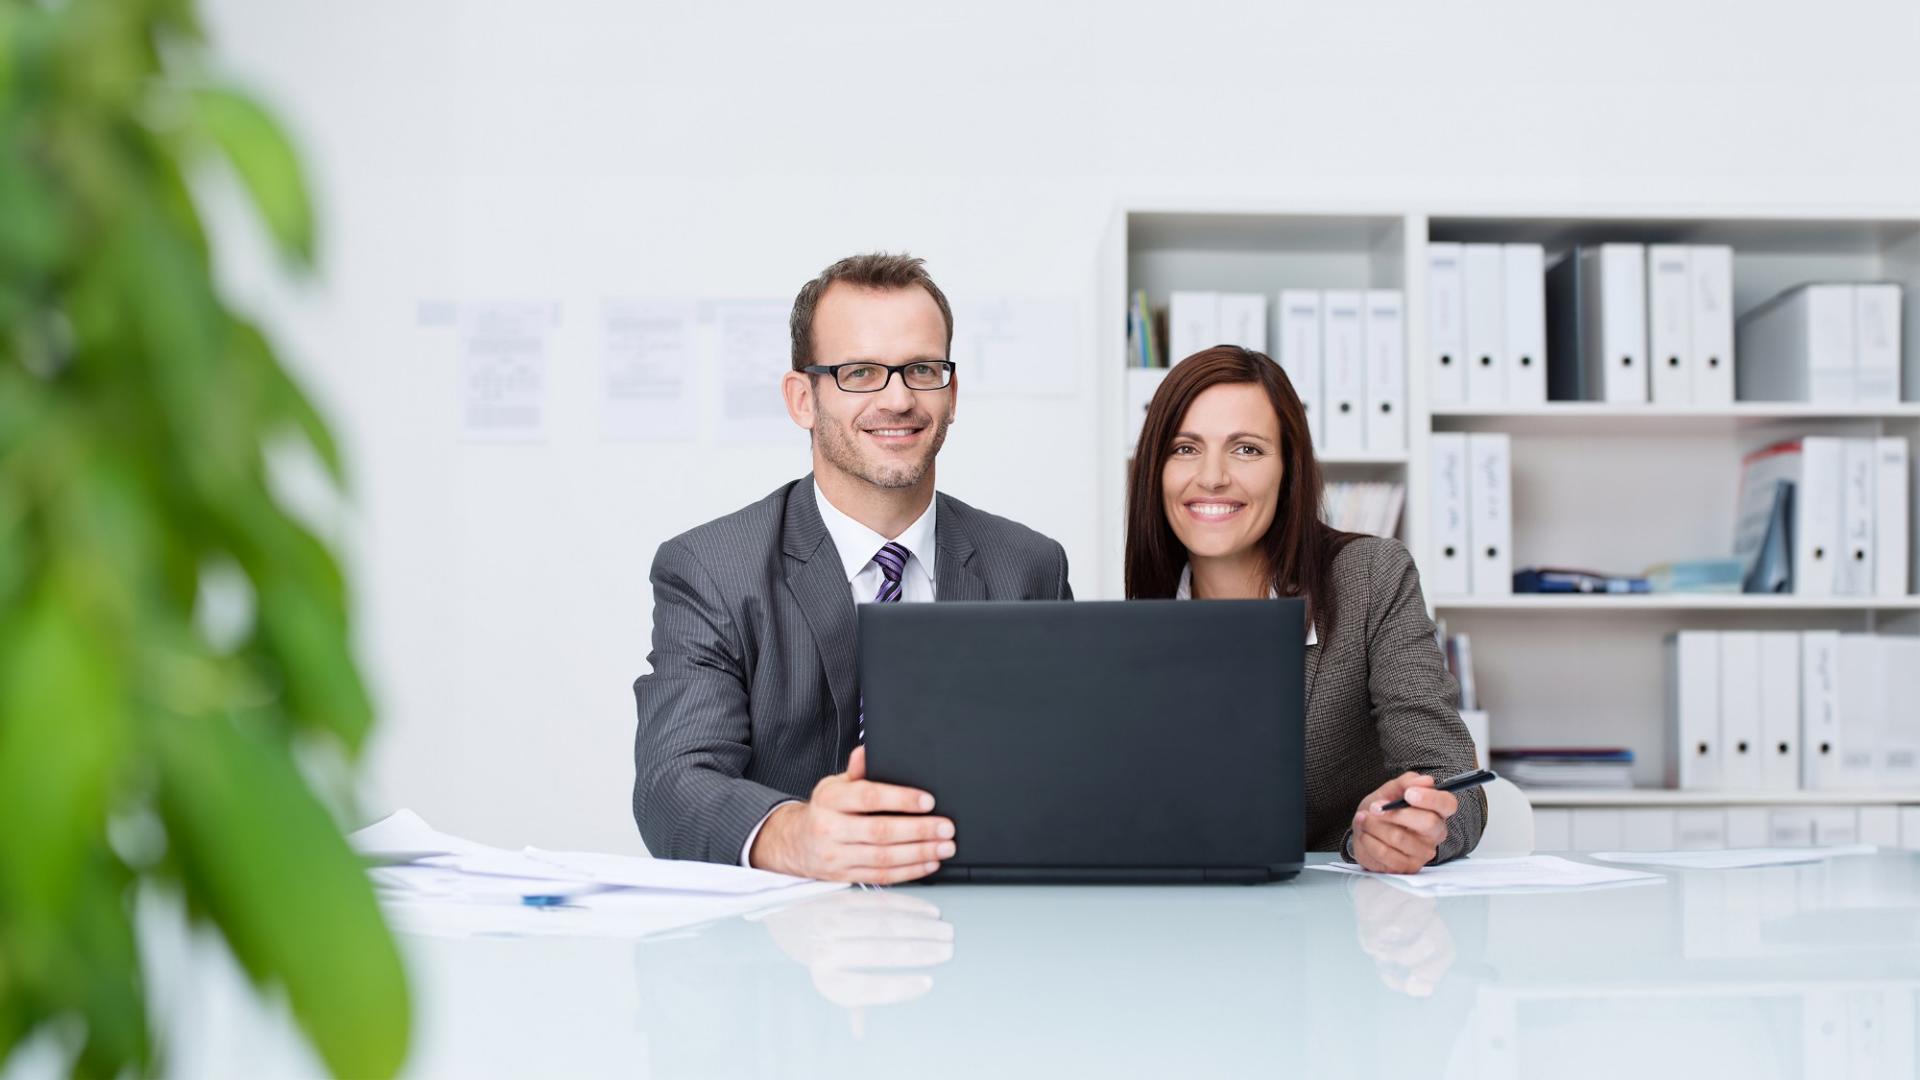 Ein Mann und eine Frau in Geschäftskleidung sitzen hinter einem Laptop und lächeln